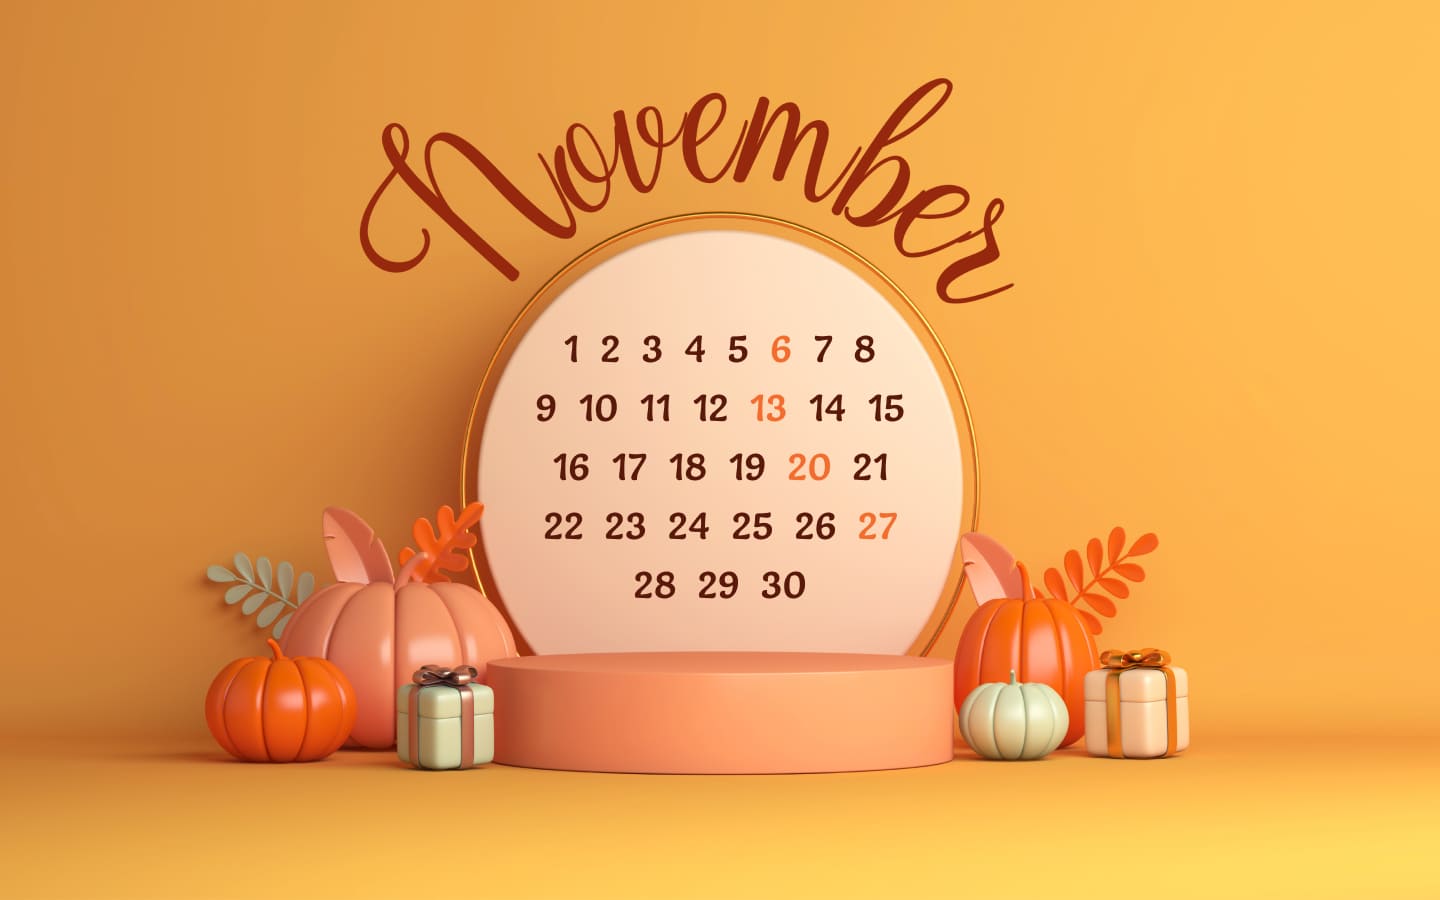 Free November calendar extension 1400х900.